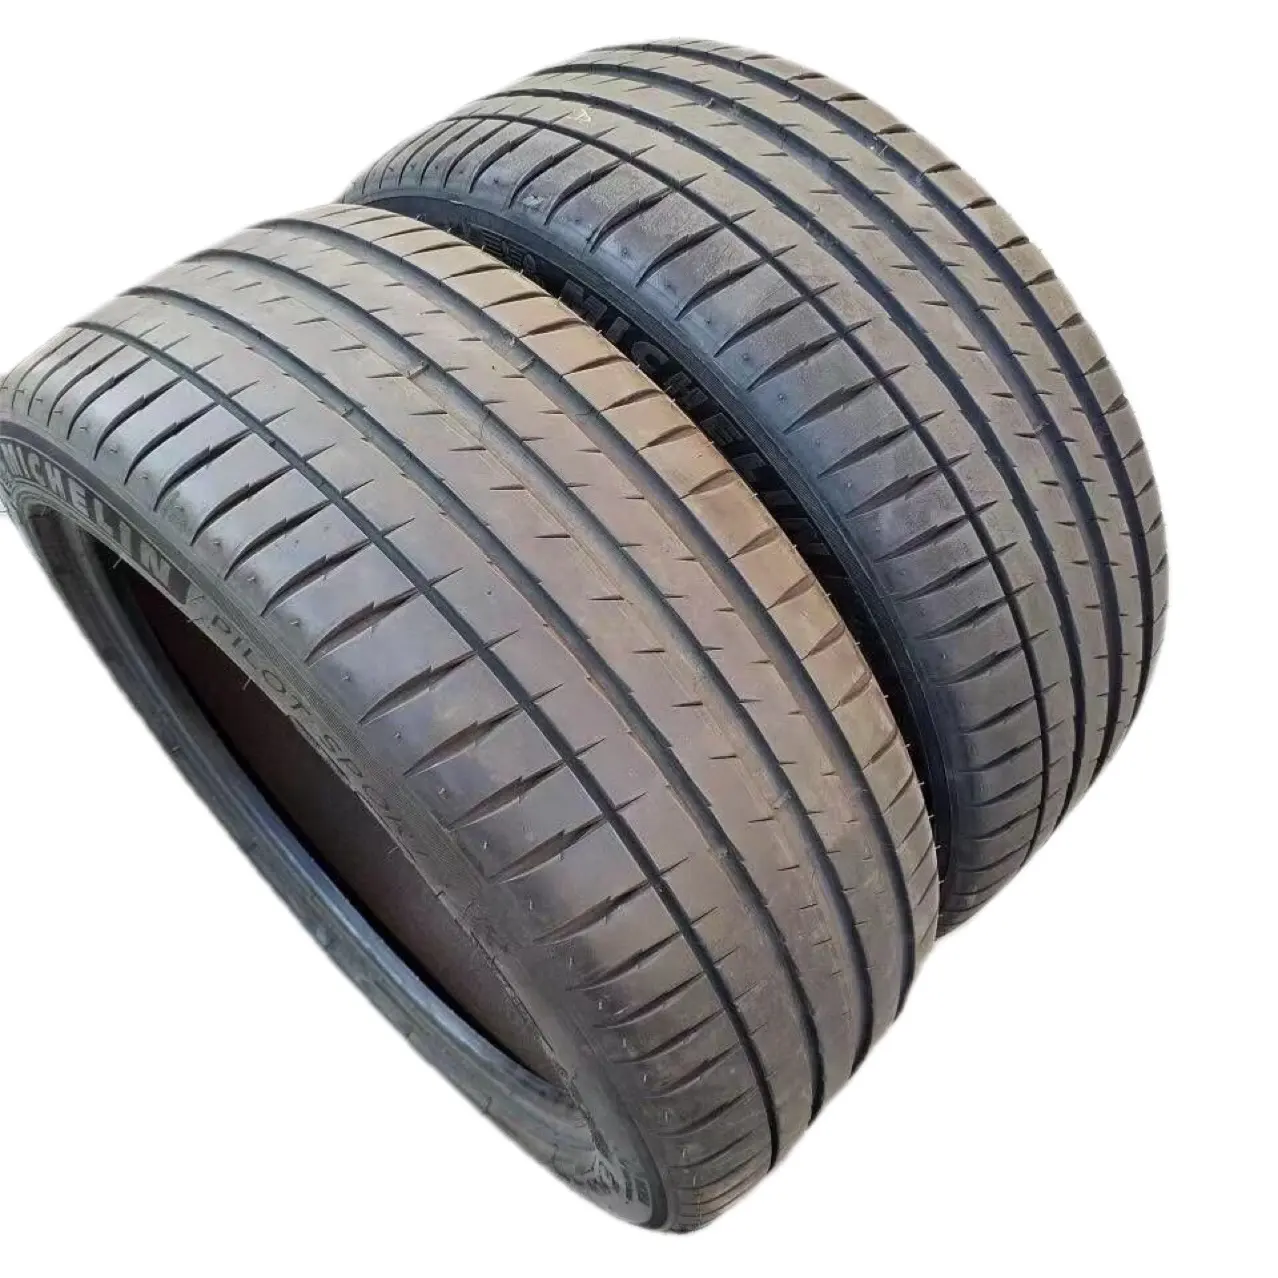 Fabrika toptan marka yeni Michelin lastikleri 235/45ZR19 Roewe RX5plus WM EX5 mercedes-benz GLA araba lastiği için uygun